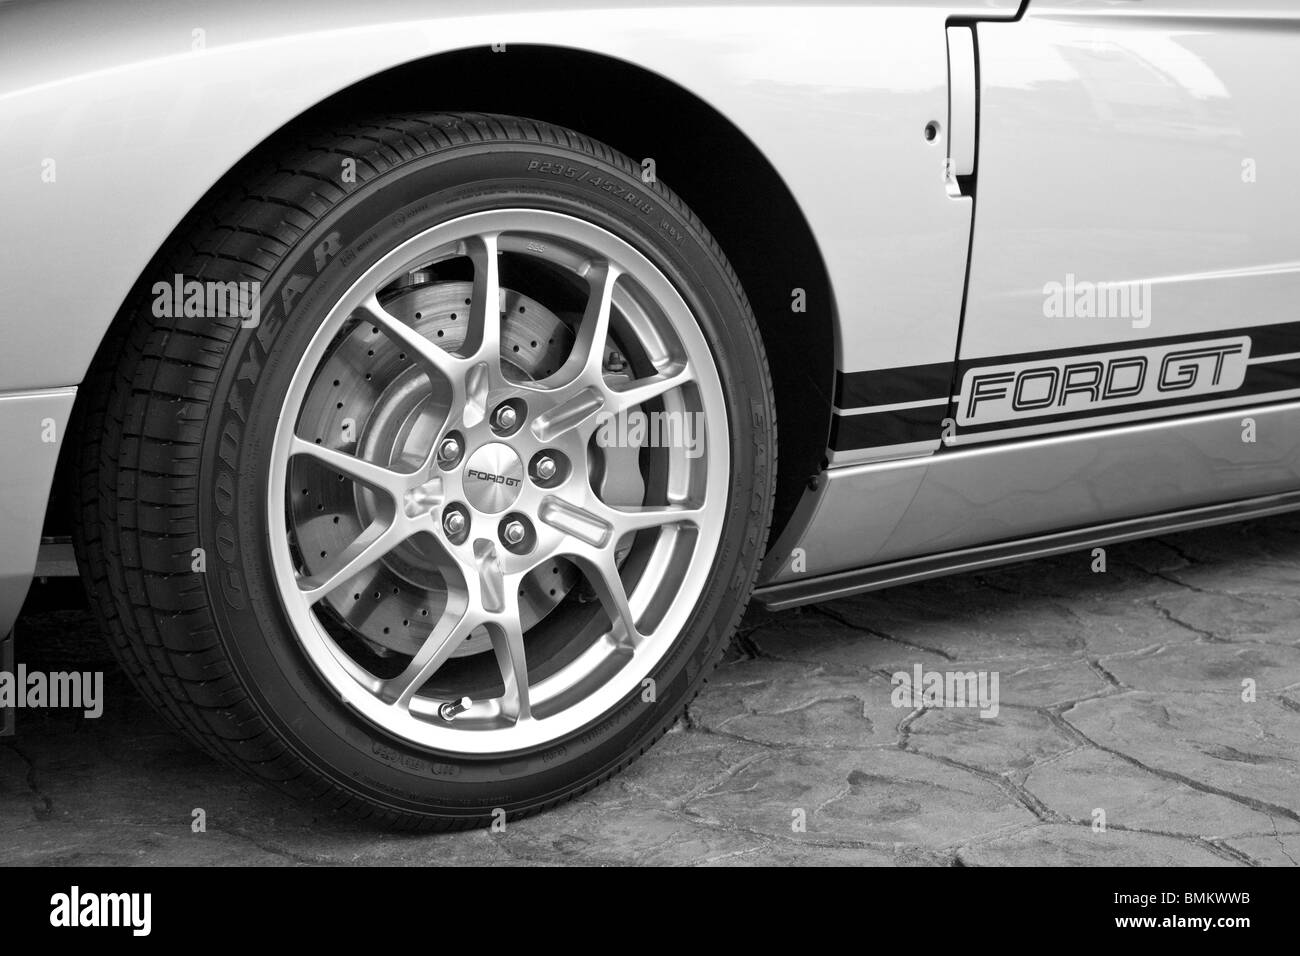 Ocala, FL - Ott 2009 - styling creativi della Ford GT auto sportiva Foto Stock